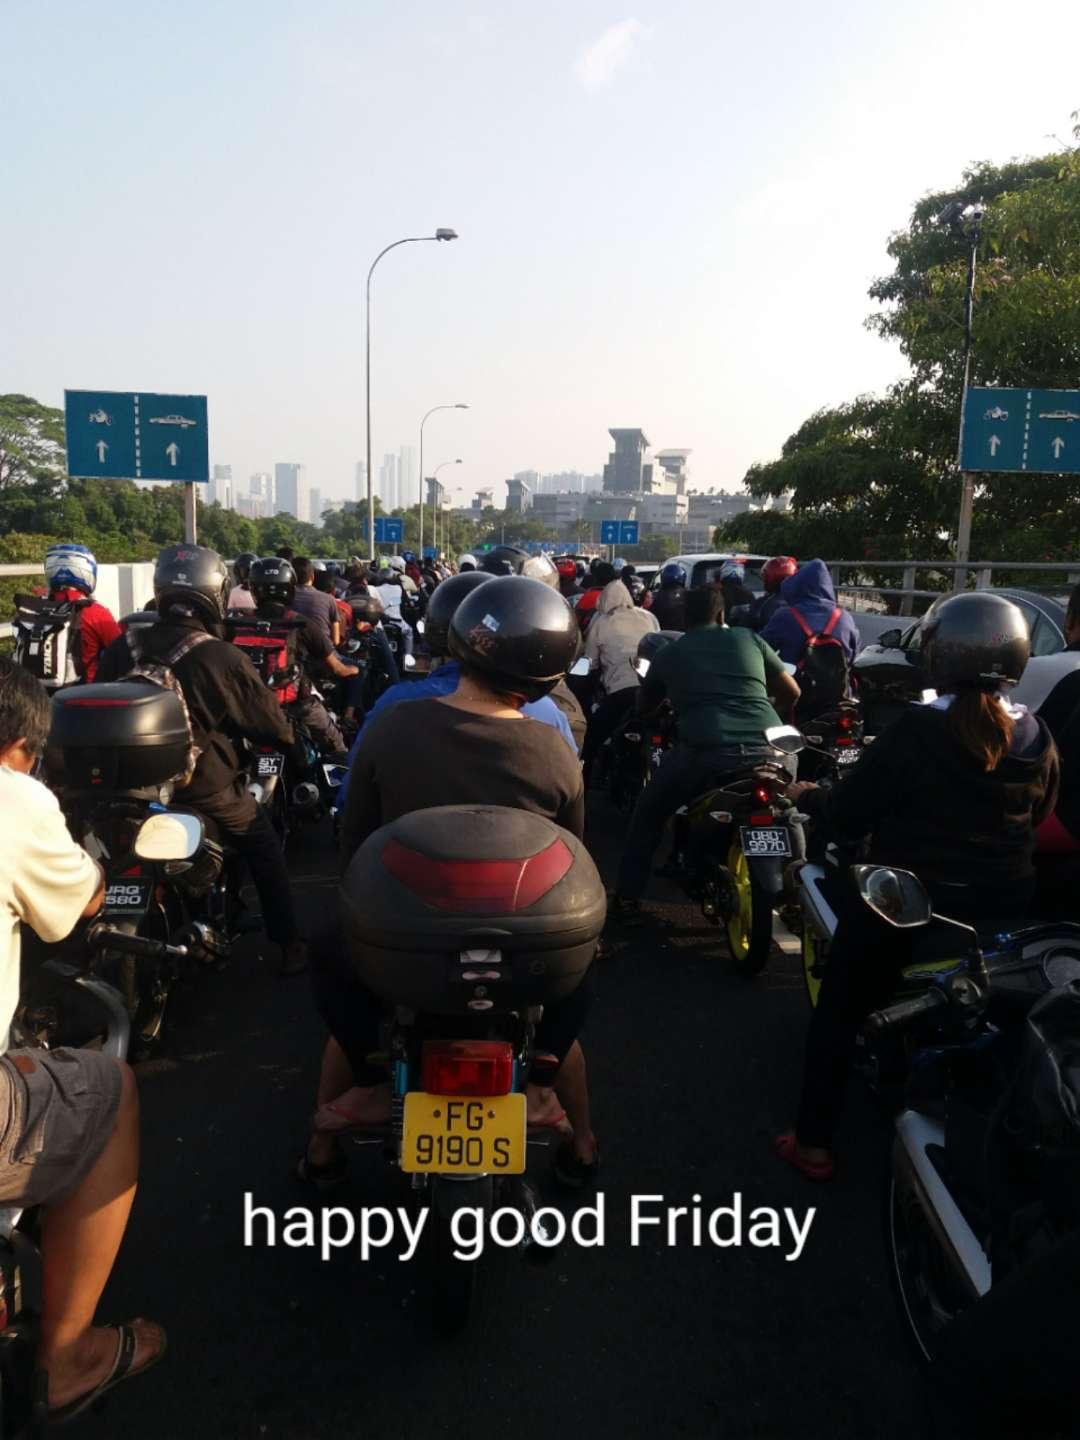 大批摩哆骑士周五清晨在新加坡关卡准备出境的情景。(图取自网络)